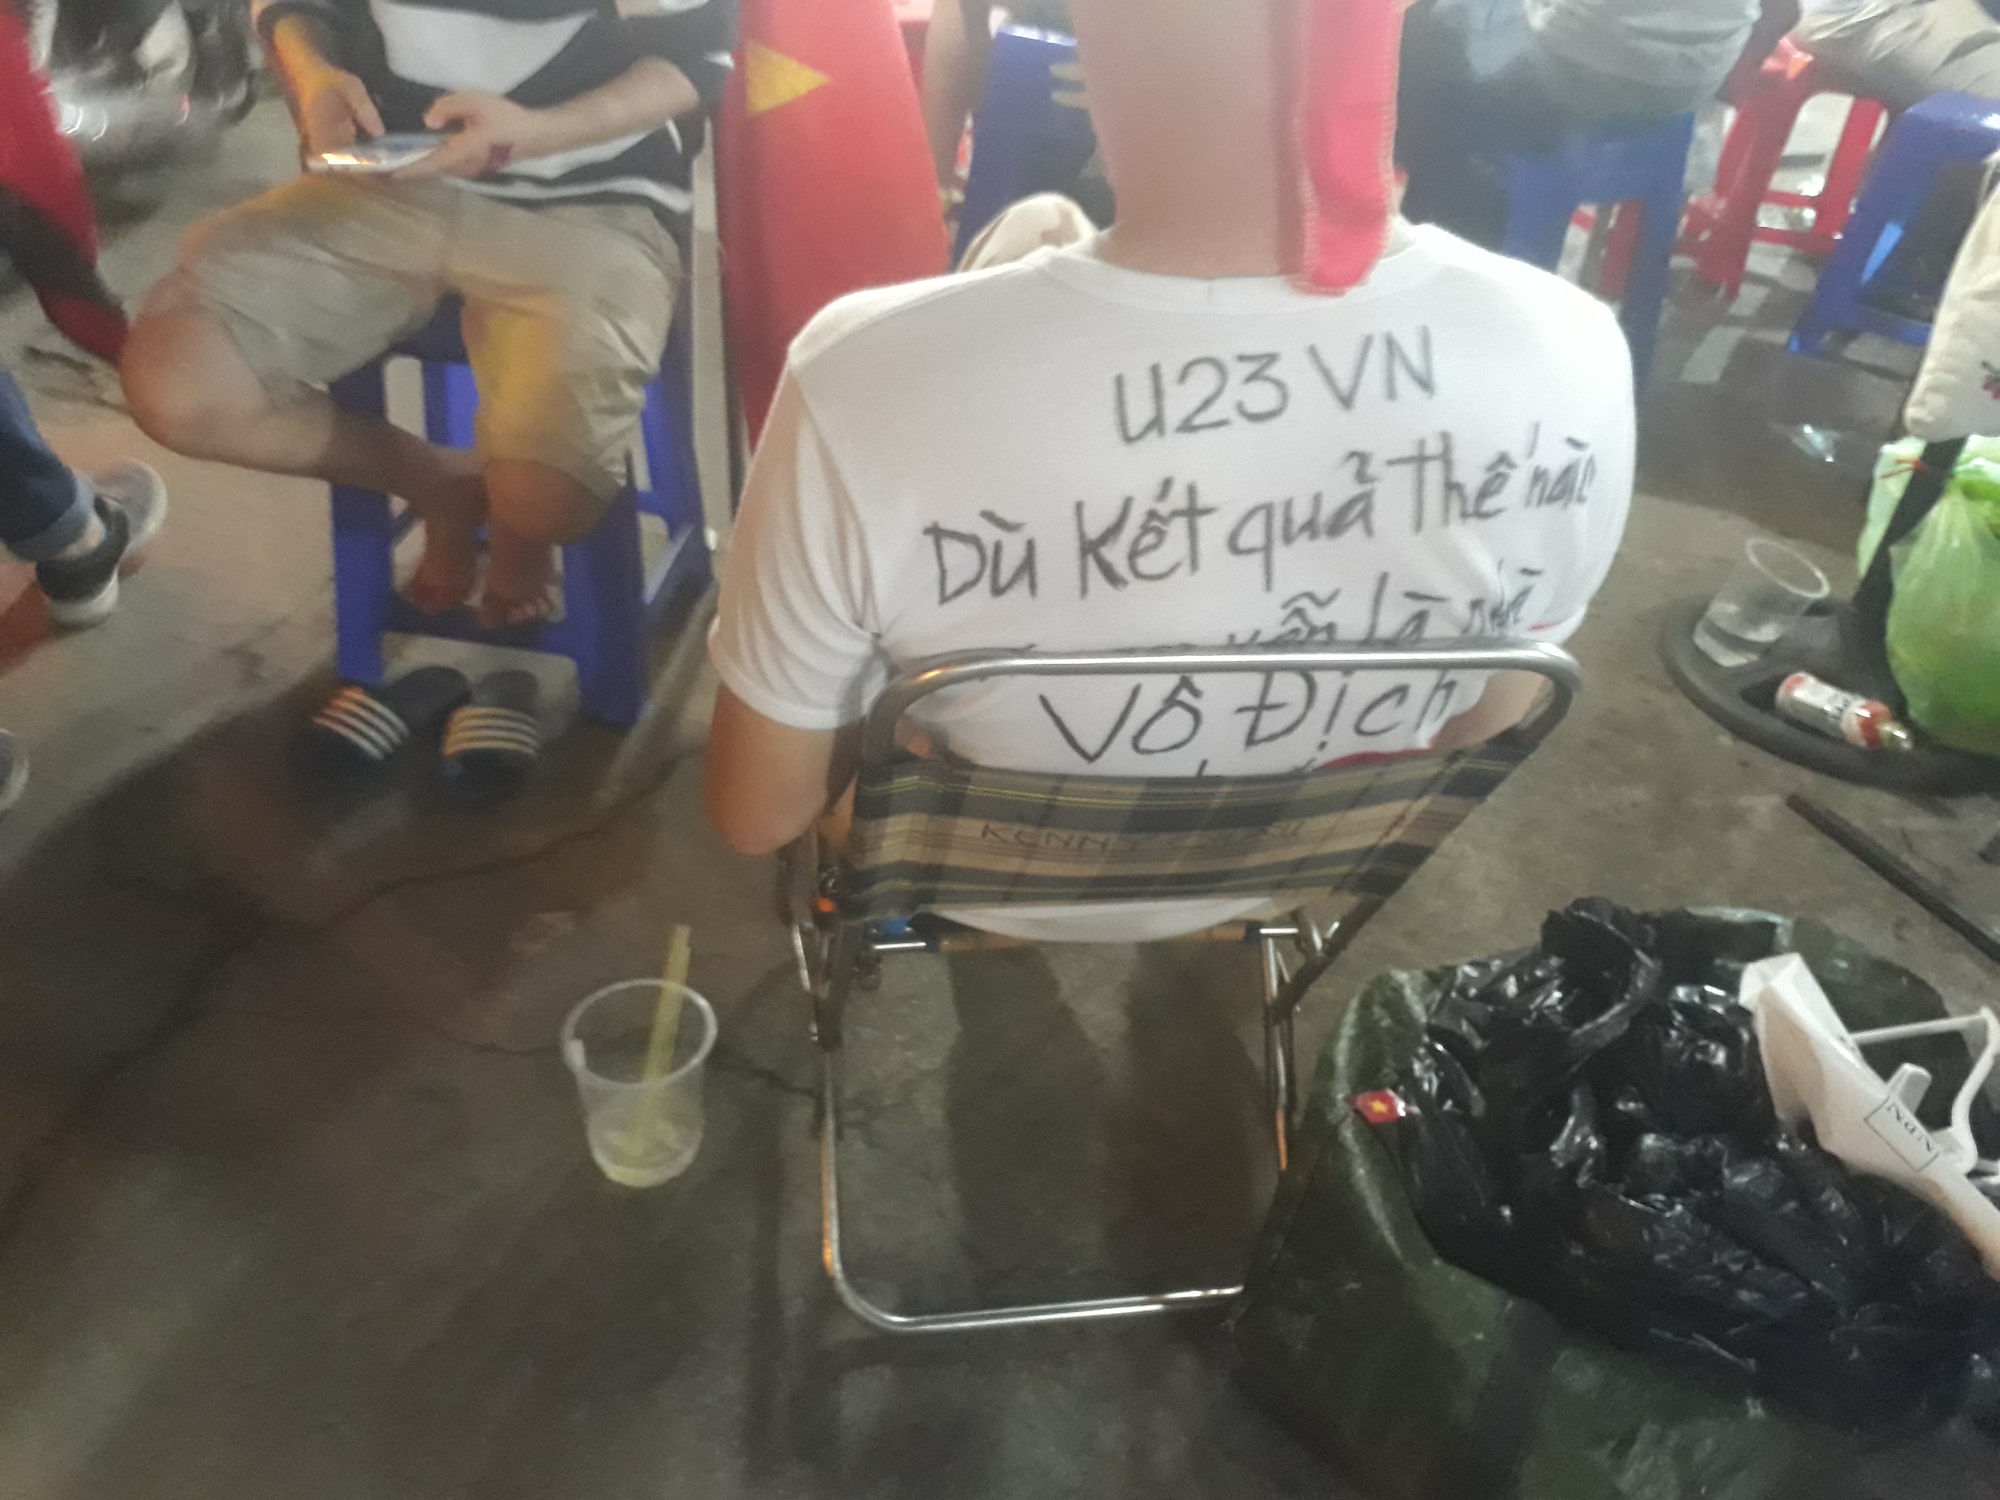 U23 Việt Nam: Xin đừng khóc bởi các anh đã chiến đấu đến sức cùng lực kiệt - Ảnh 1